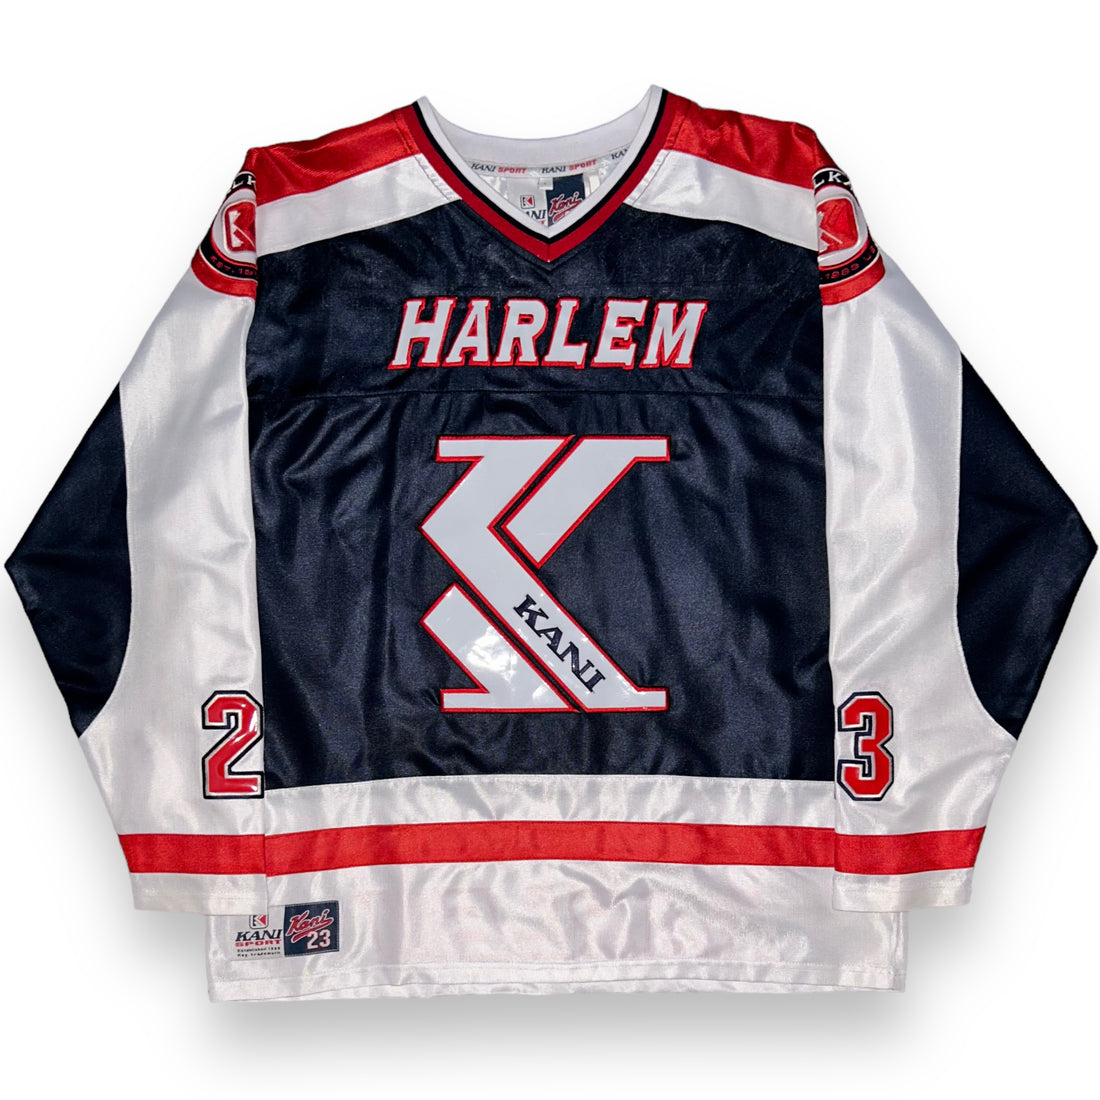 Karl Kani Harlem Vintage Jersey (XL)